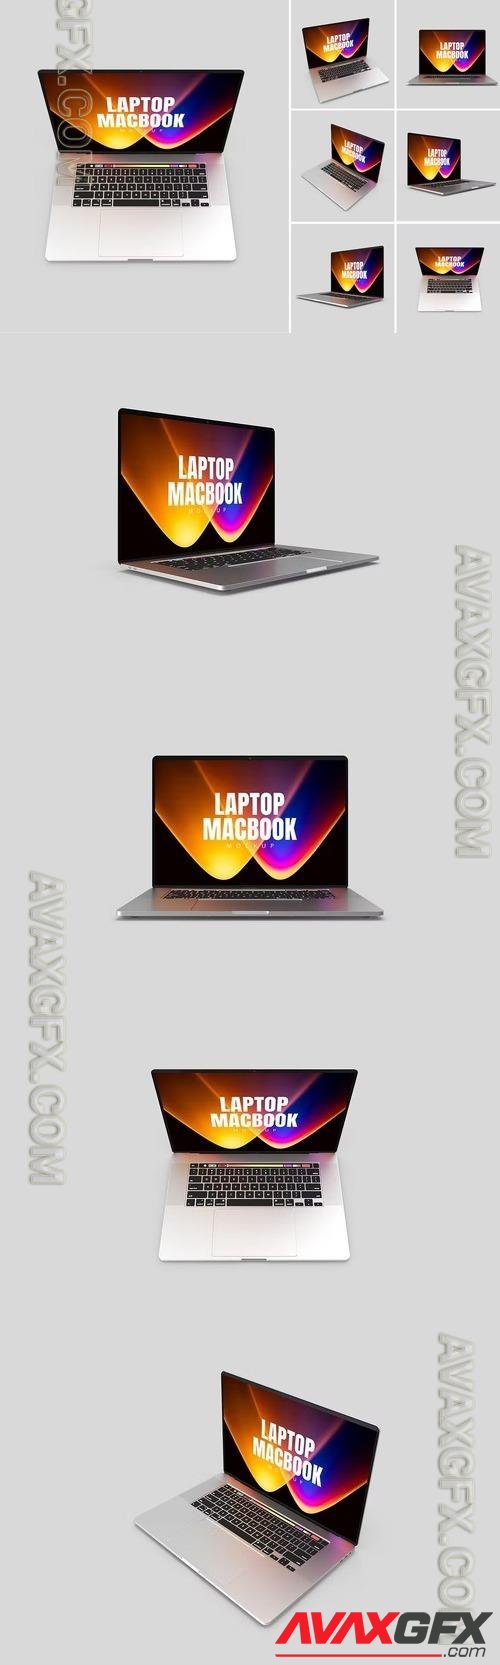 Laptop Macbook Display Web App Mock-Up GPAYNB4